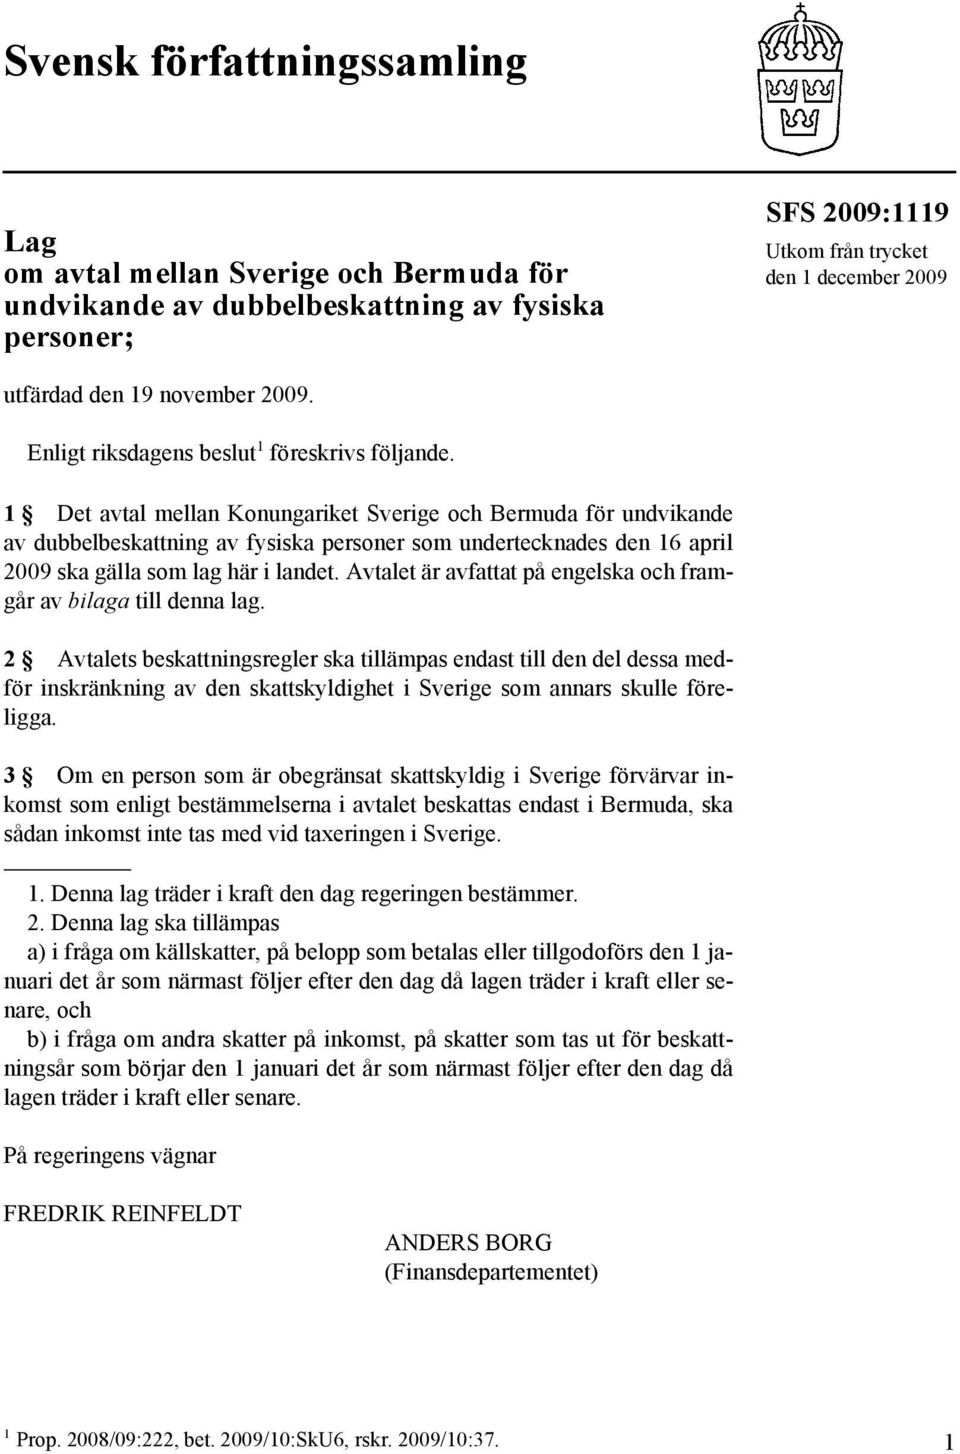 1 Det avtal mellan Konungariket Sverige och Bermuda för undvikande av dubbelbeskattning av fysiska personer som undertecknades den 16 april 2009 ska gälla som lag här i landet.